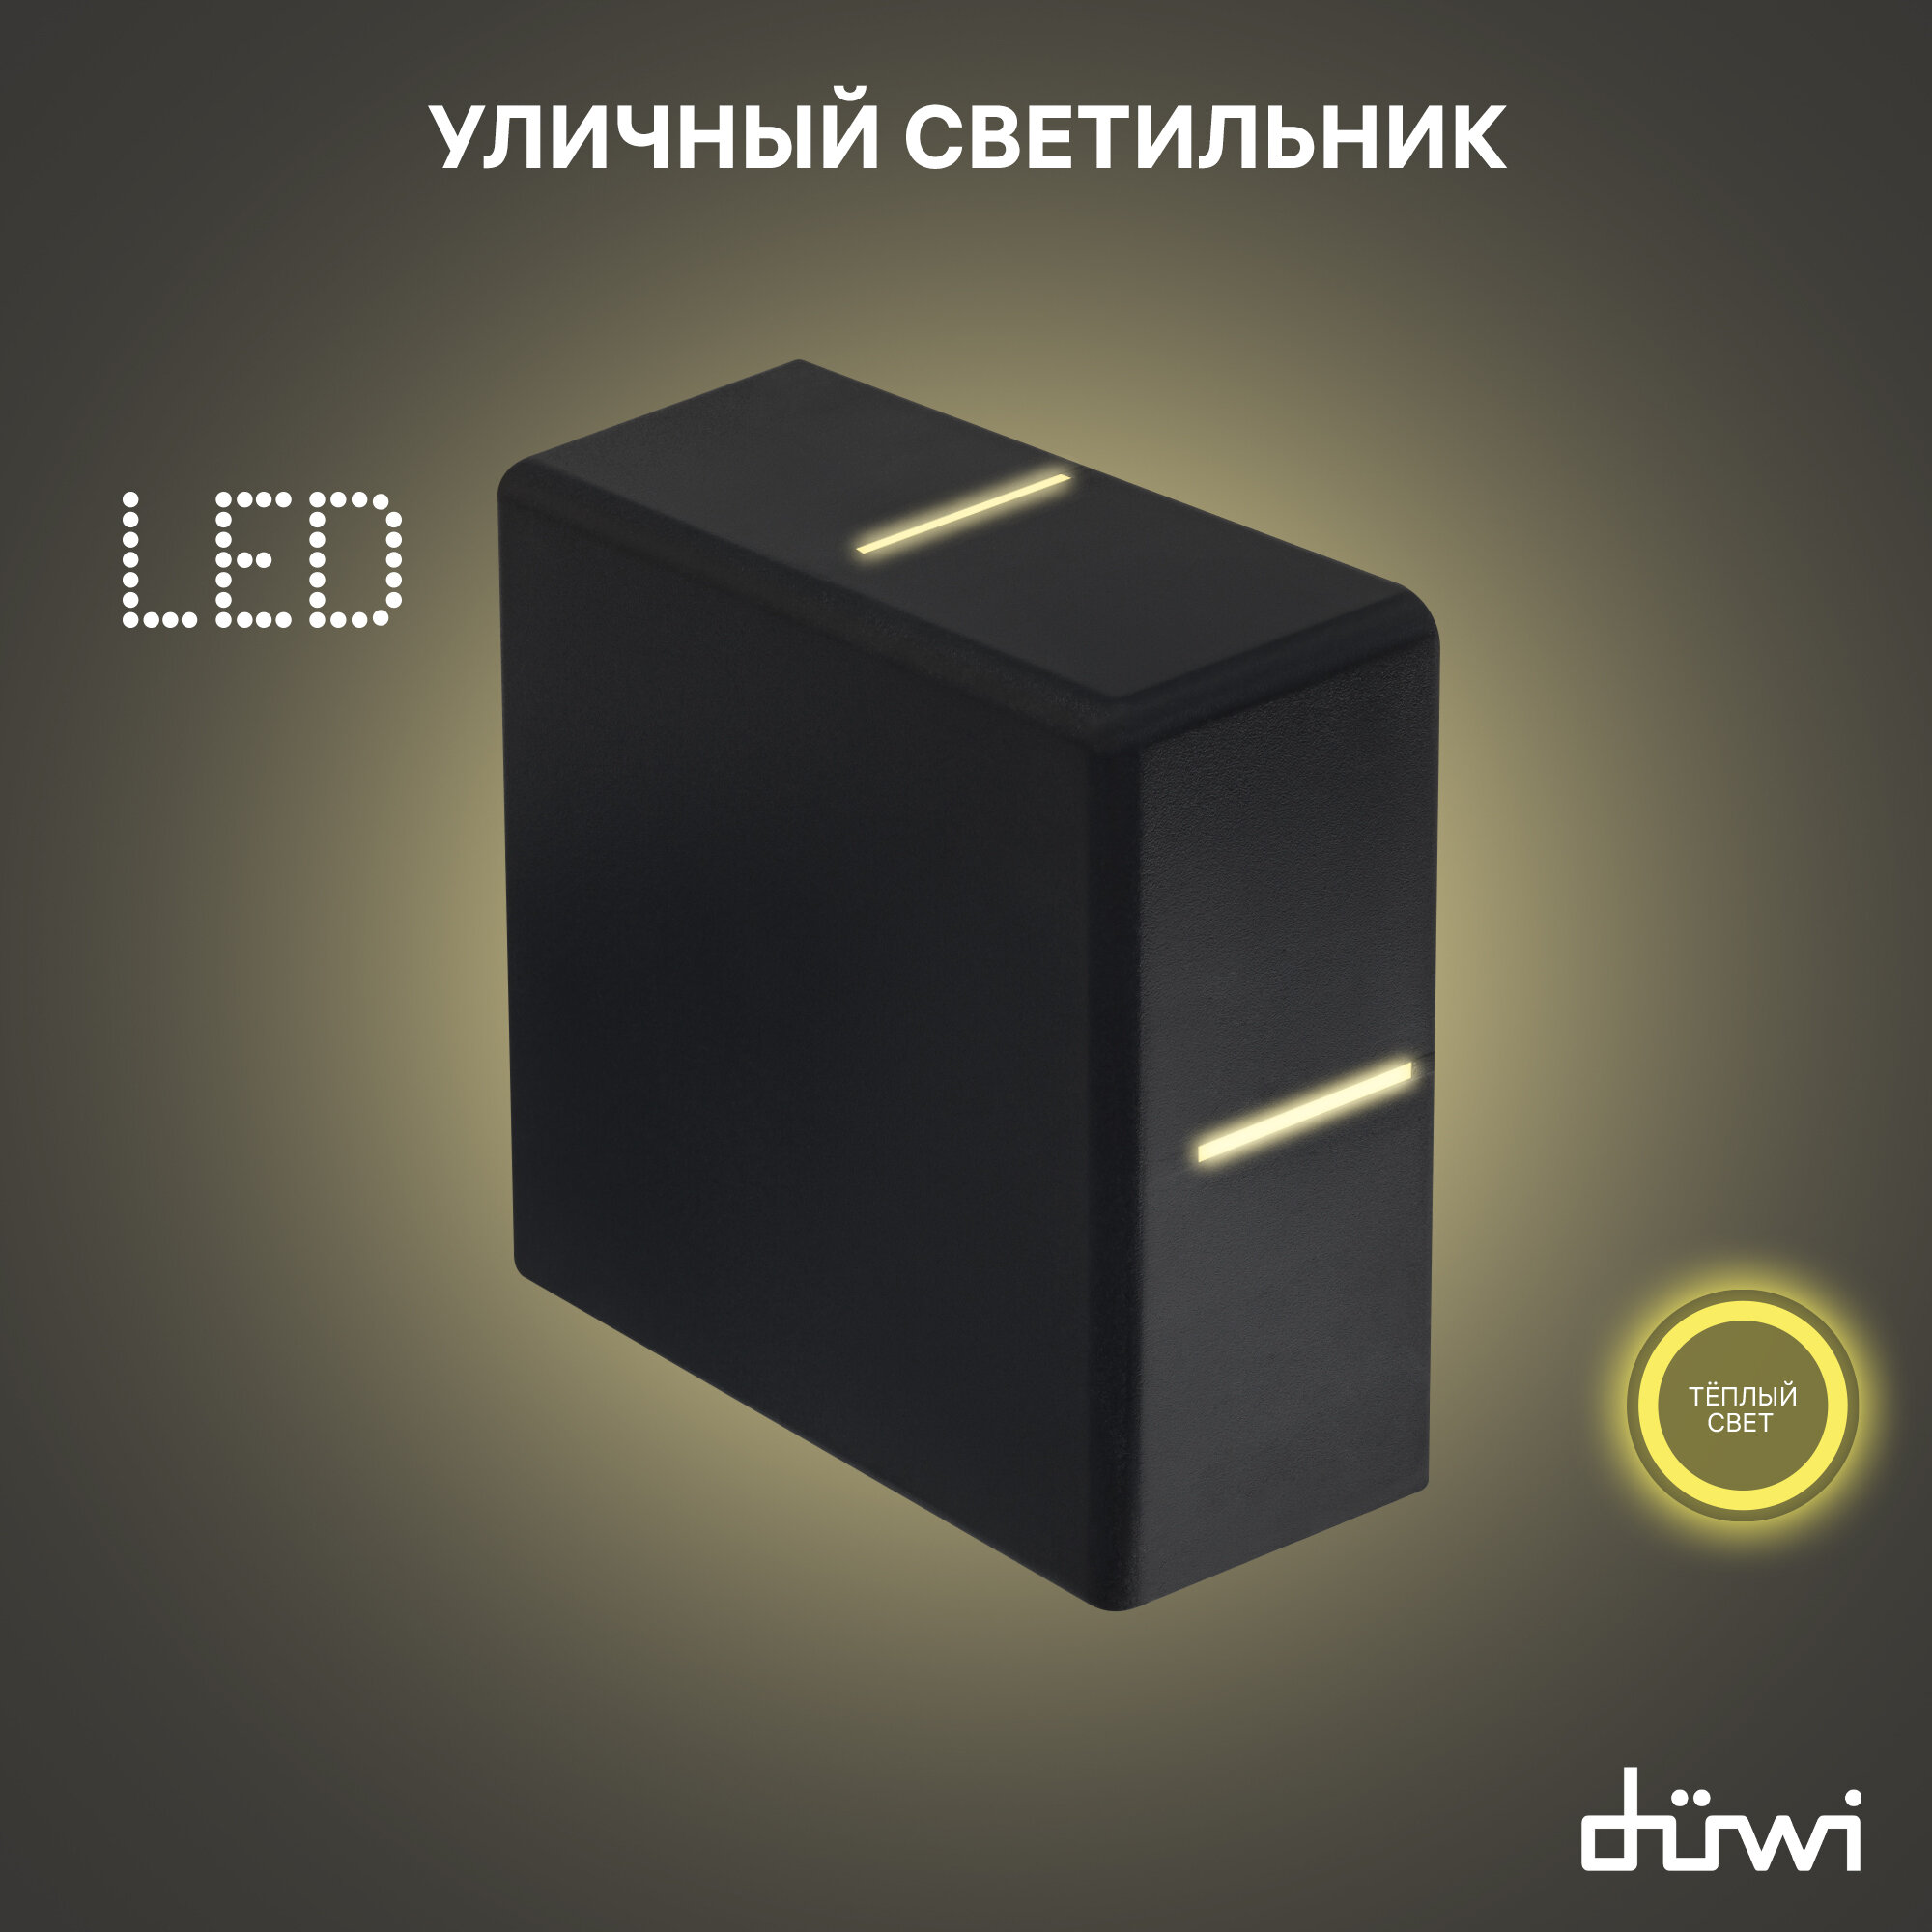 Светильник светодиодный архитектурный Nuovo LED 7W, IP54, 3000K, черный, duwi 24274 1